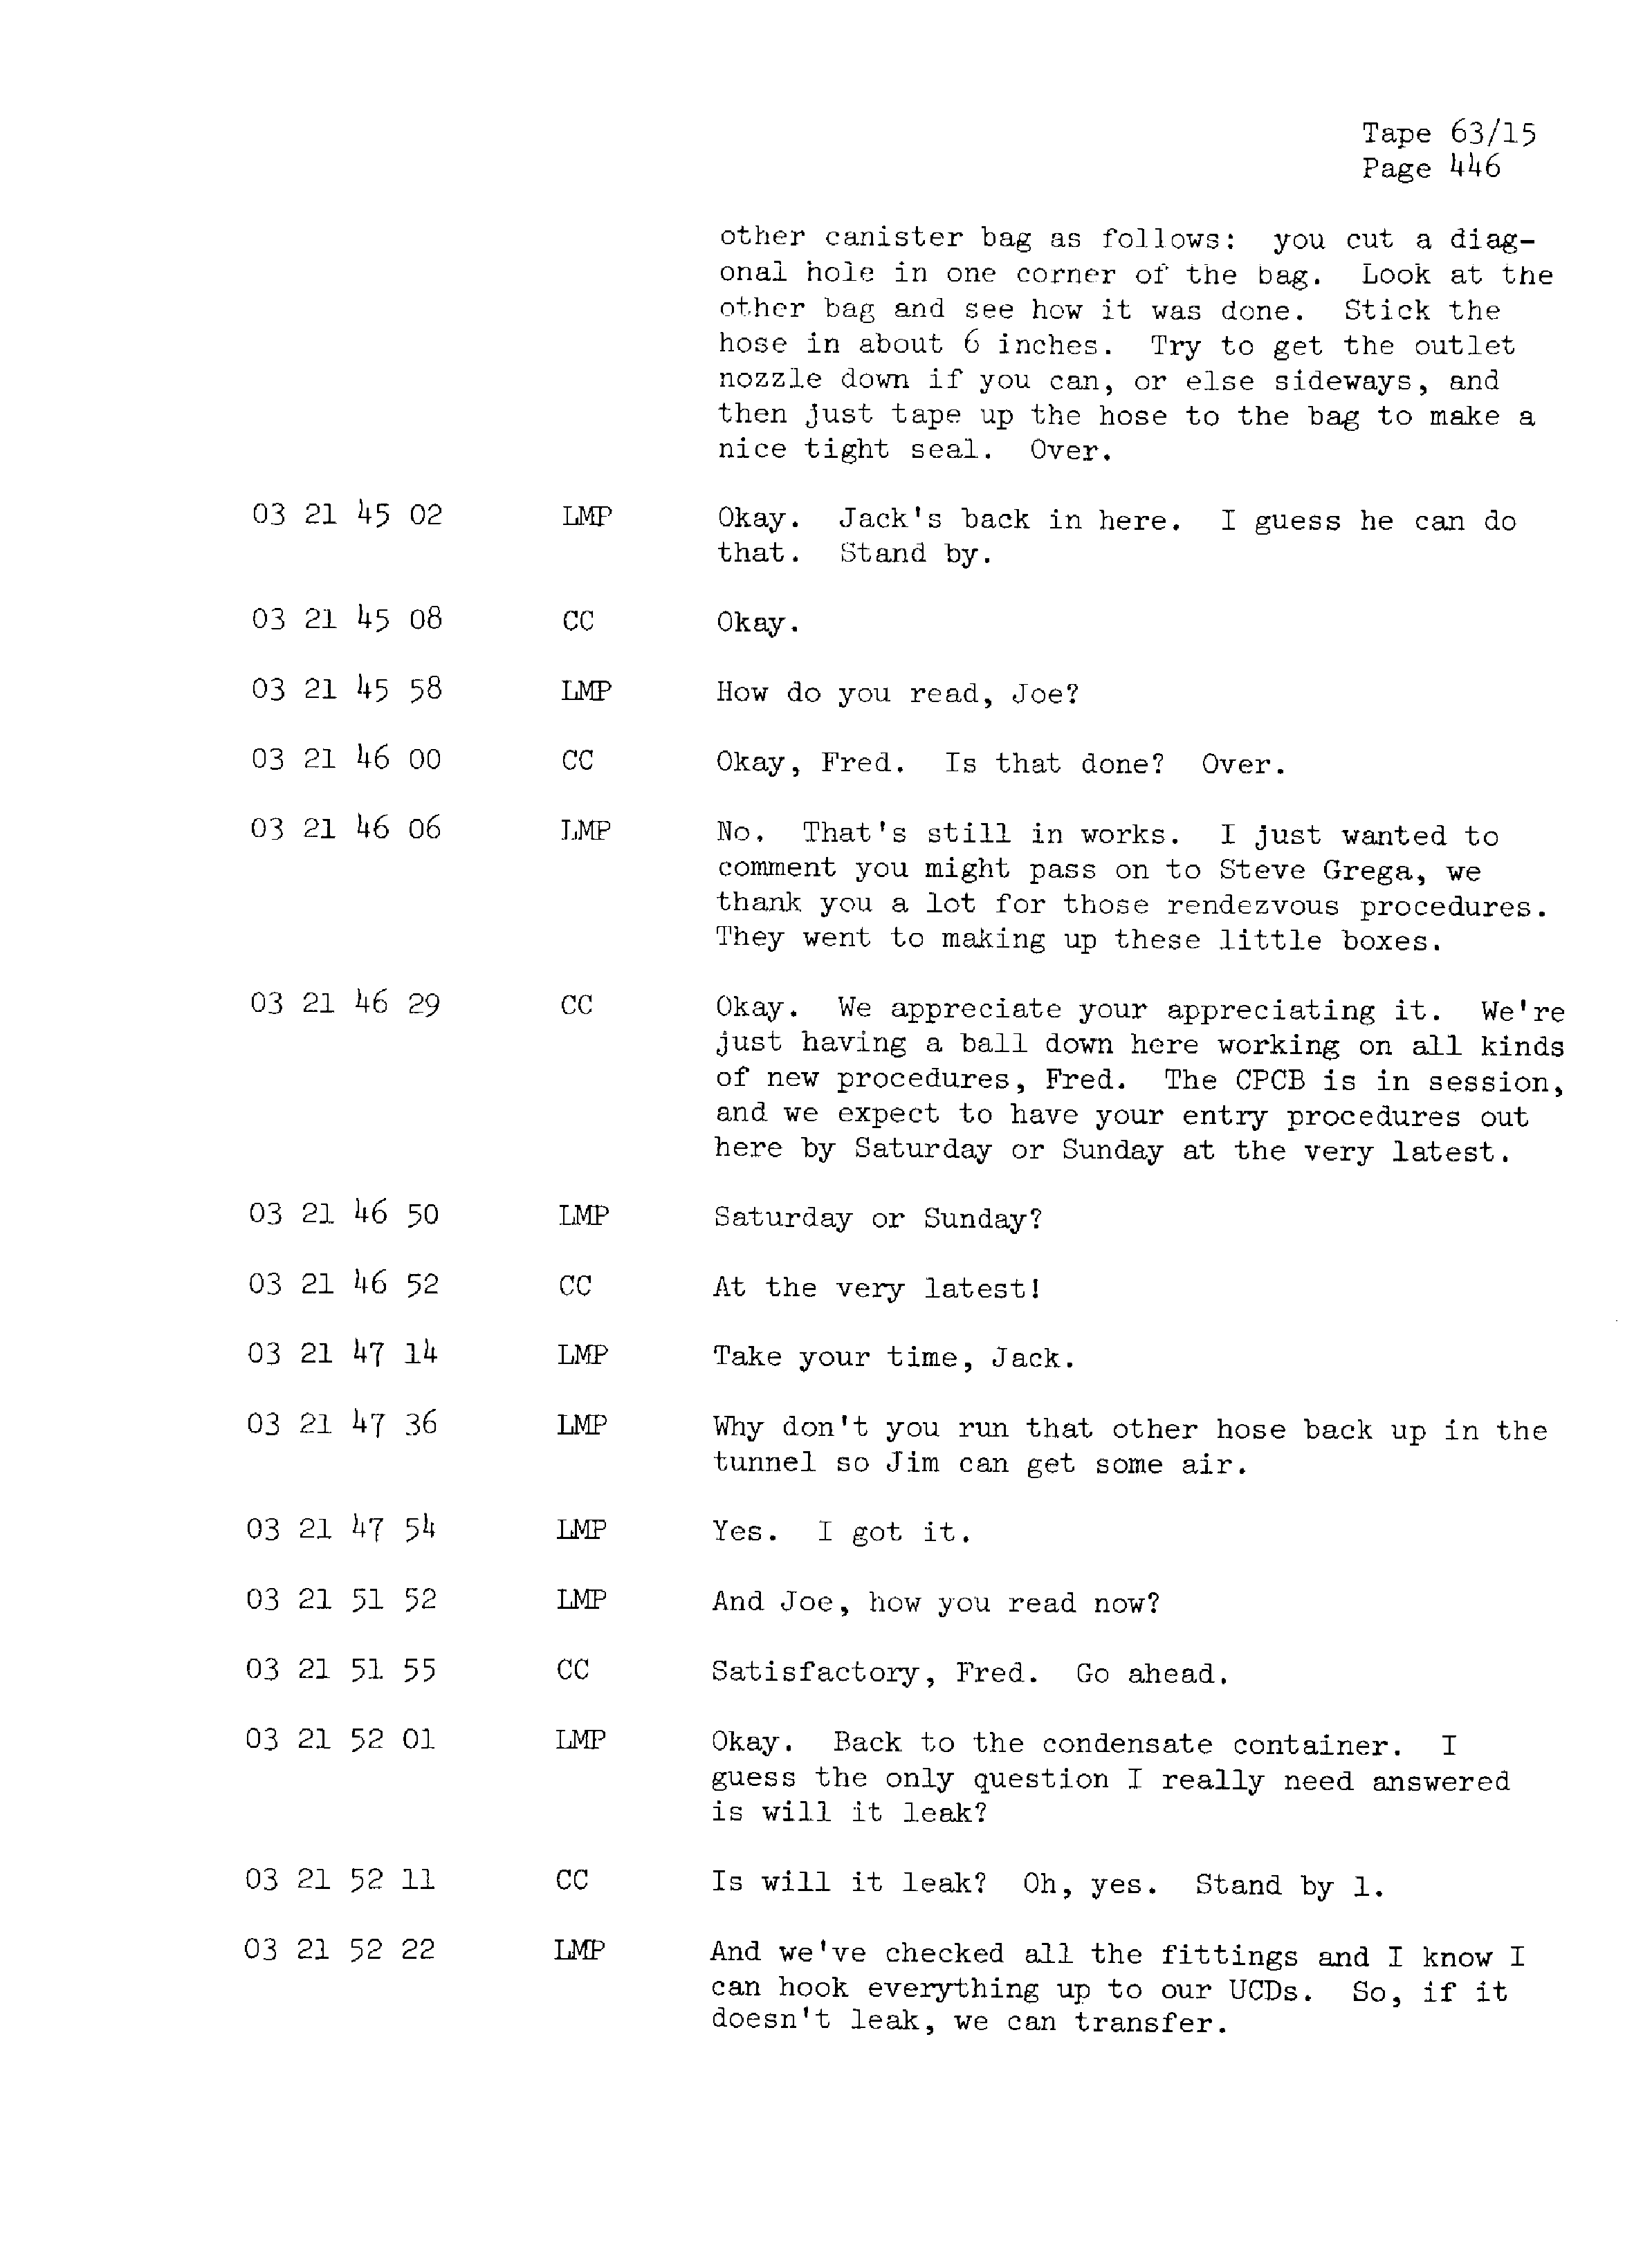 Page 453 of Apollo 13’s original transcript